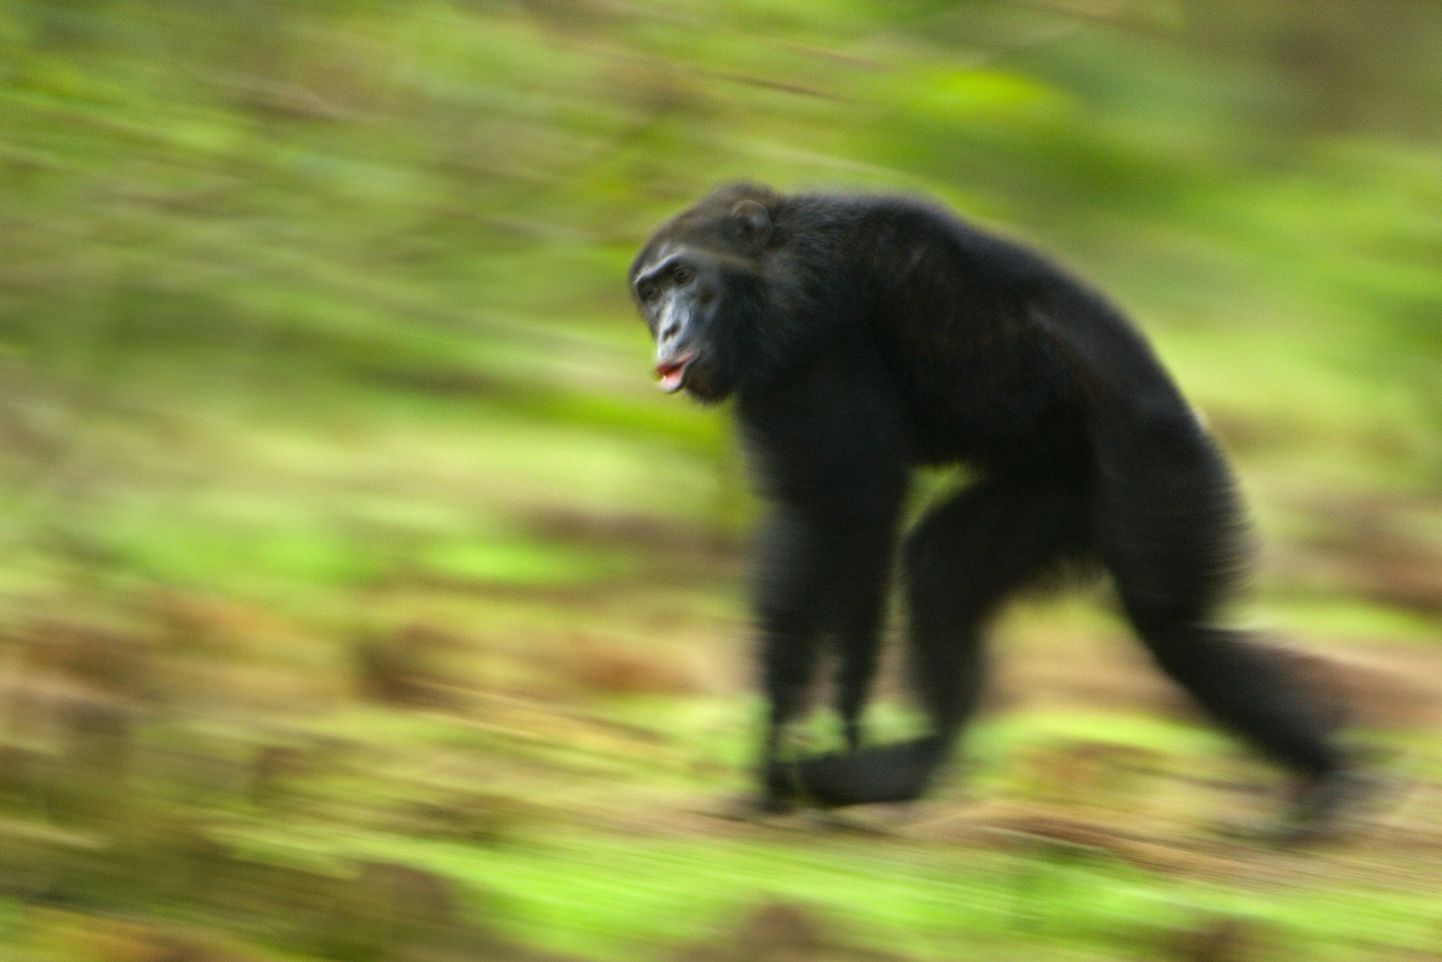 Šimpans Fongoli rahvuspargis Senegalis, kus teadlased kirjeldasid ebatavalist alfaisaste verist surma oma enda klanni käte läbi. Iseenda juhtisaste tapmine on šimpansite seas erakordselt ebatavaline.